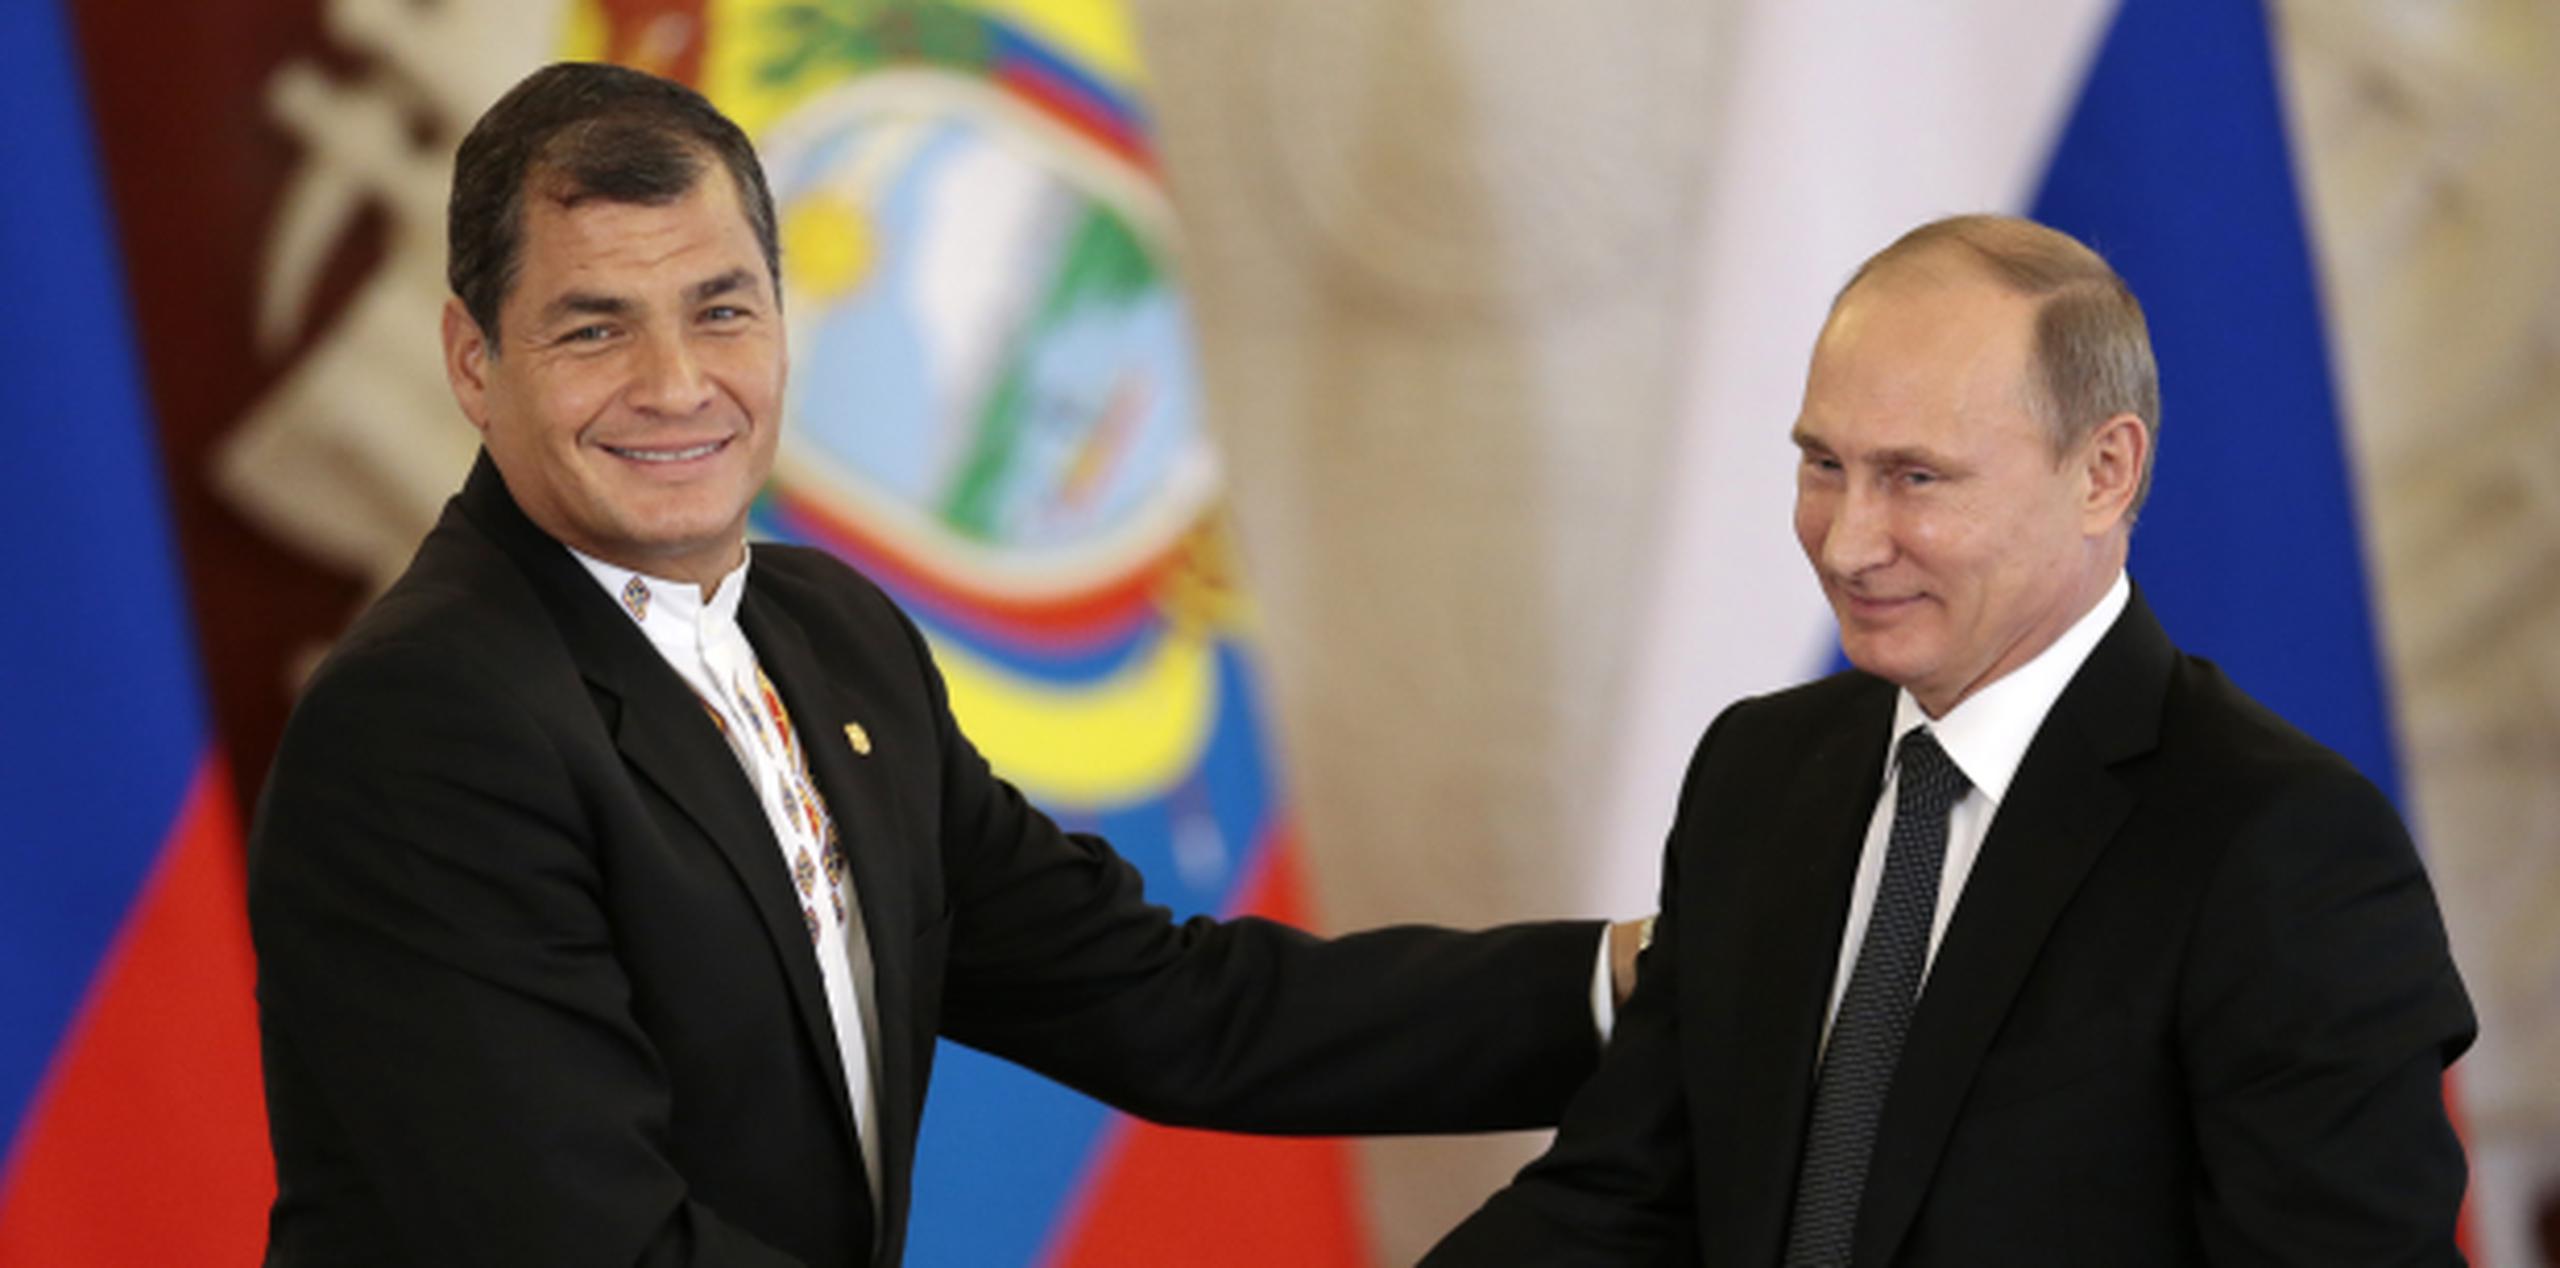 El líder ecuatoriano felicitó a Putin por el "éxito diplomático ruso" por haber resuelto el conflicto en Siria. (Prensa Asociada)